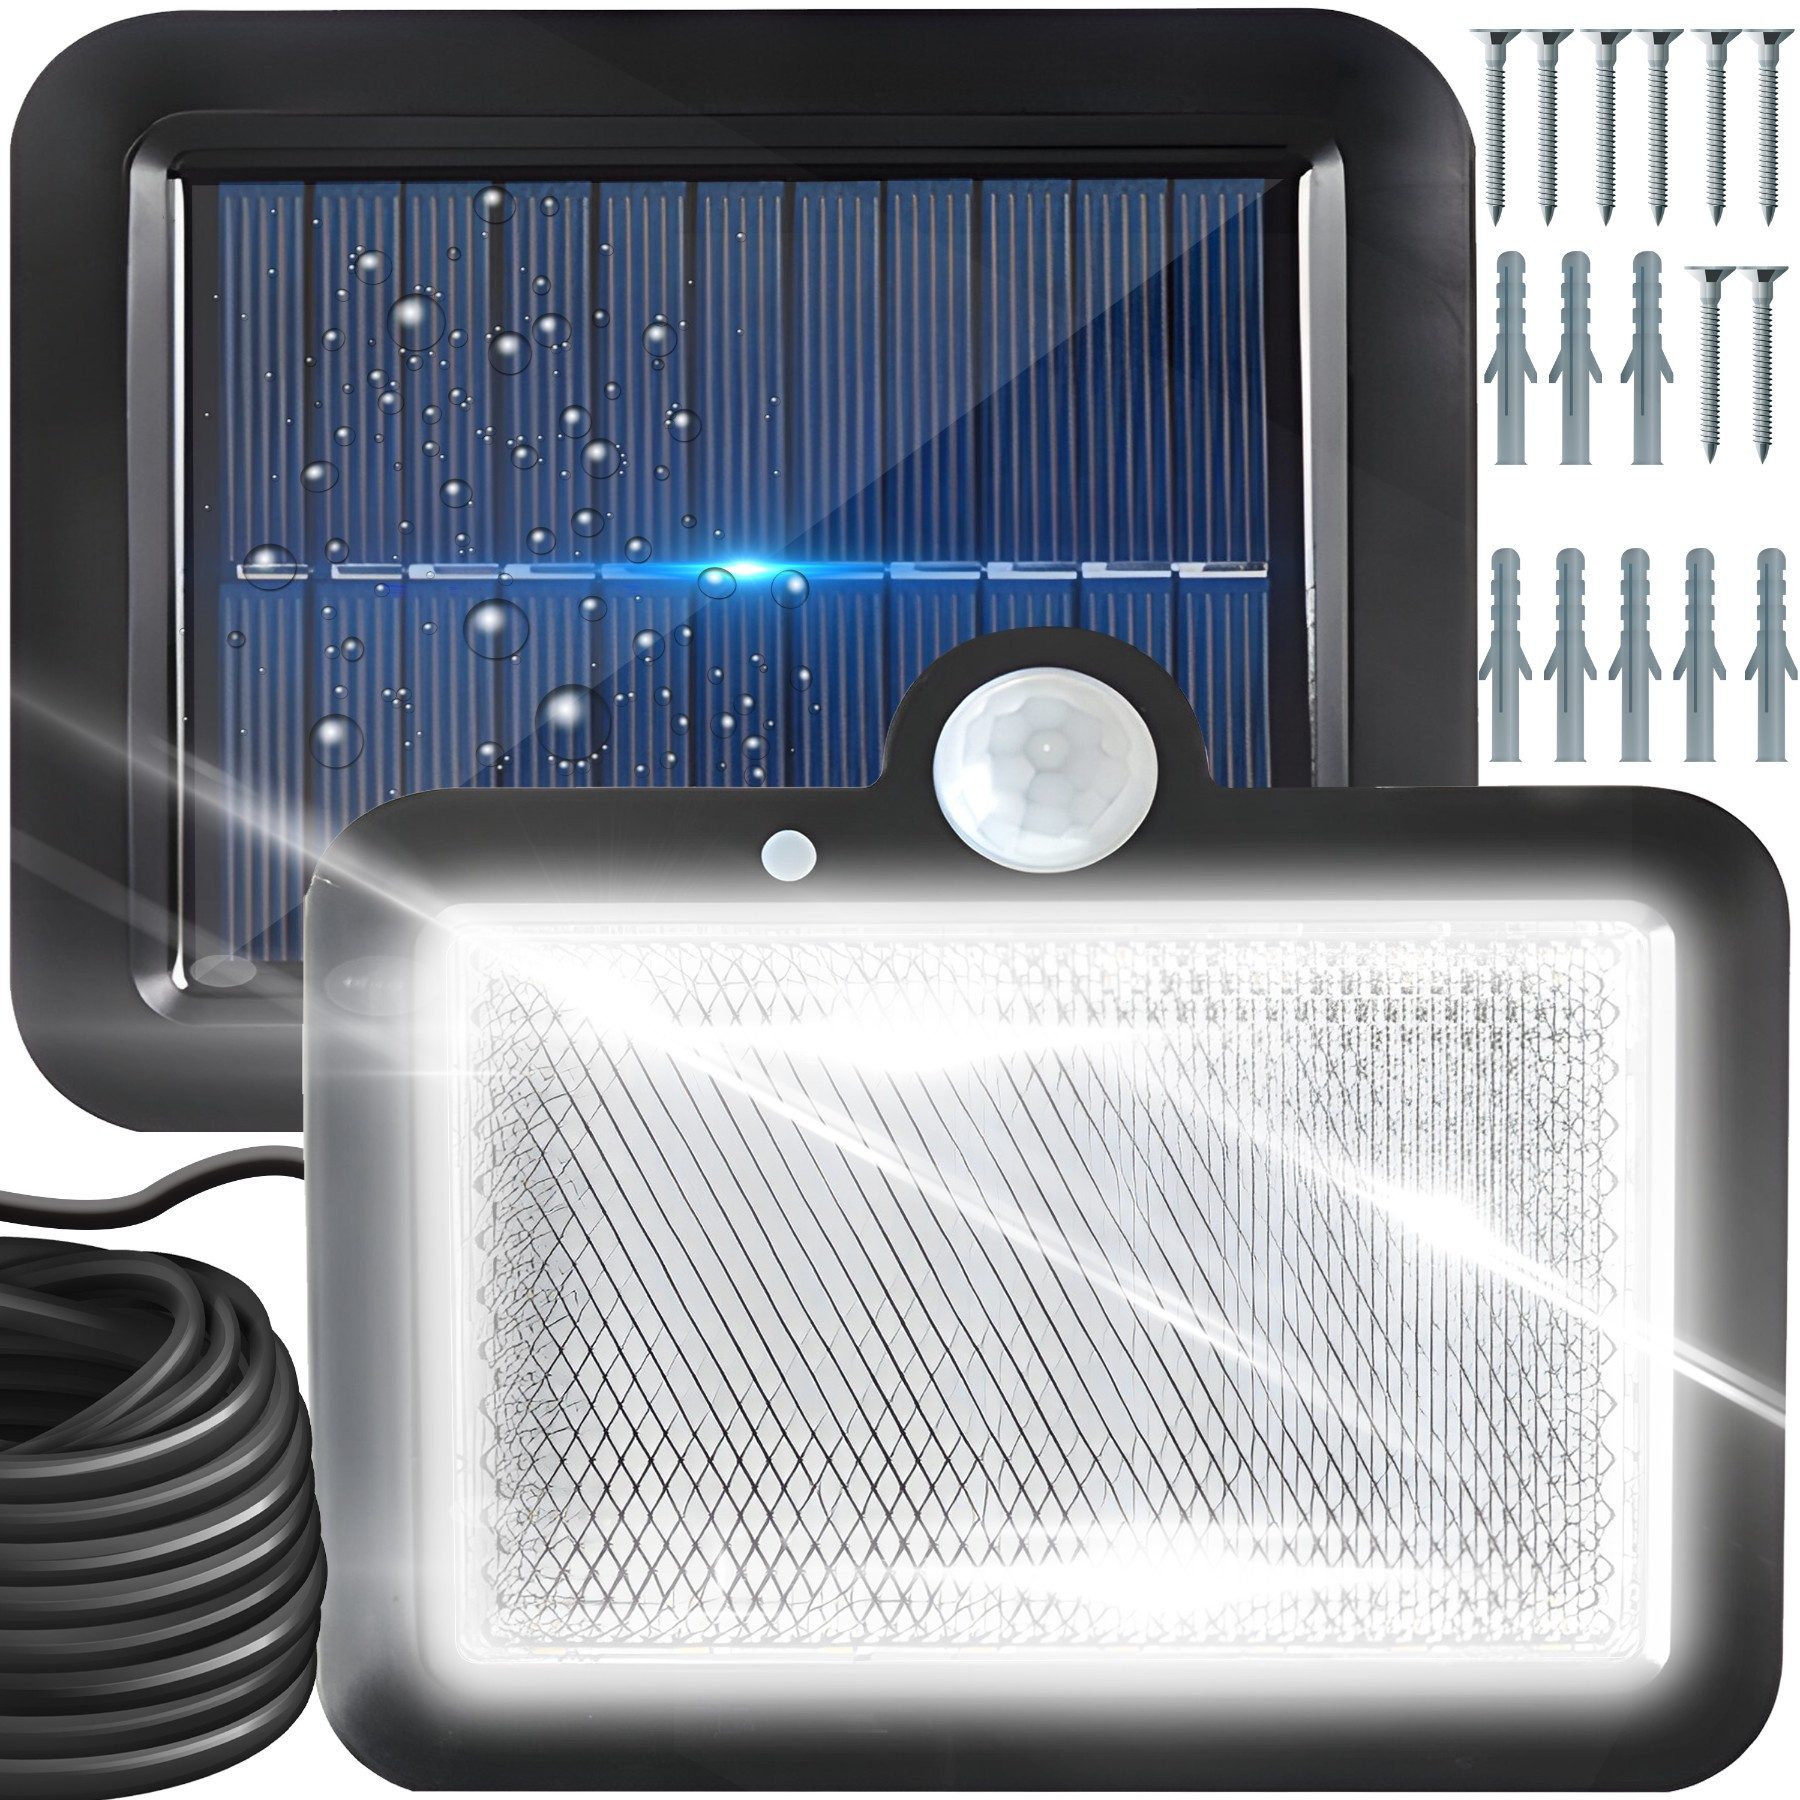 Retoo LED Solarleuchte 108 LED Solarleuchte für Außen Bewegungsmelder Solarlampen Außenlicht, Einfache Installation, Multifunktionalität, Bewegungssensorfunktion